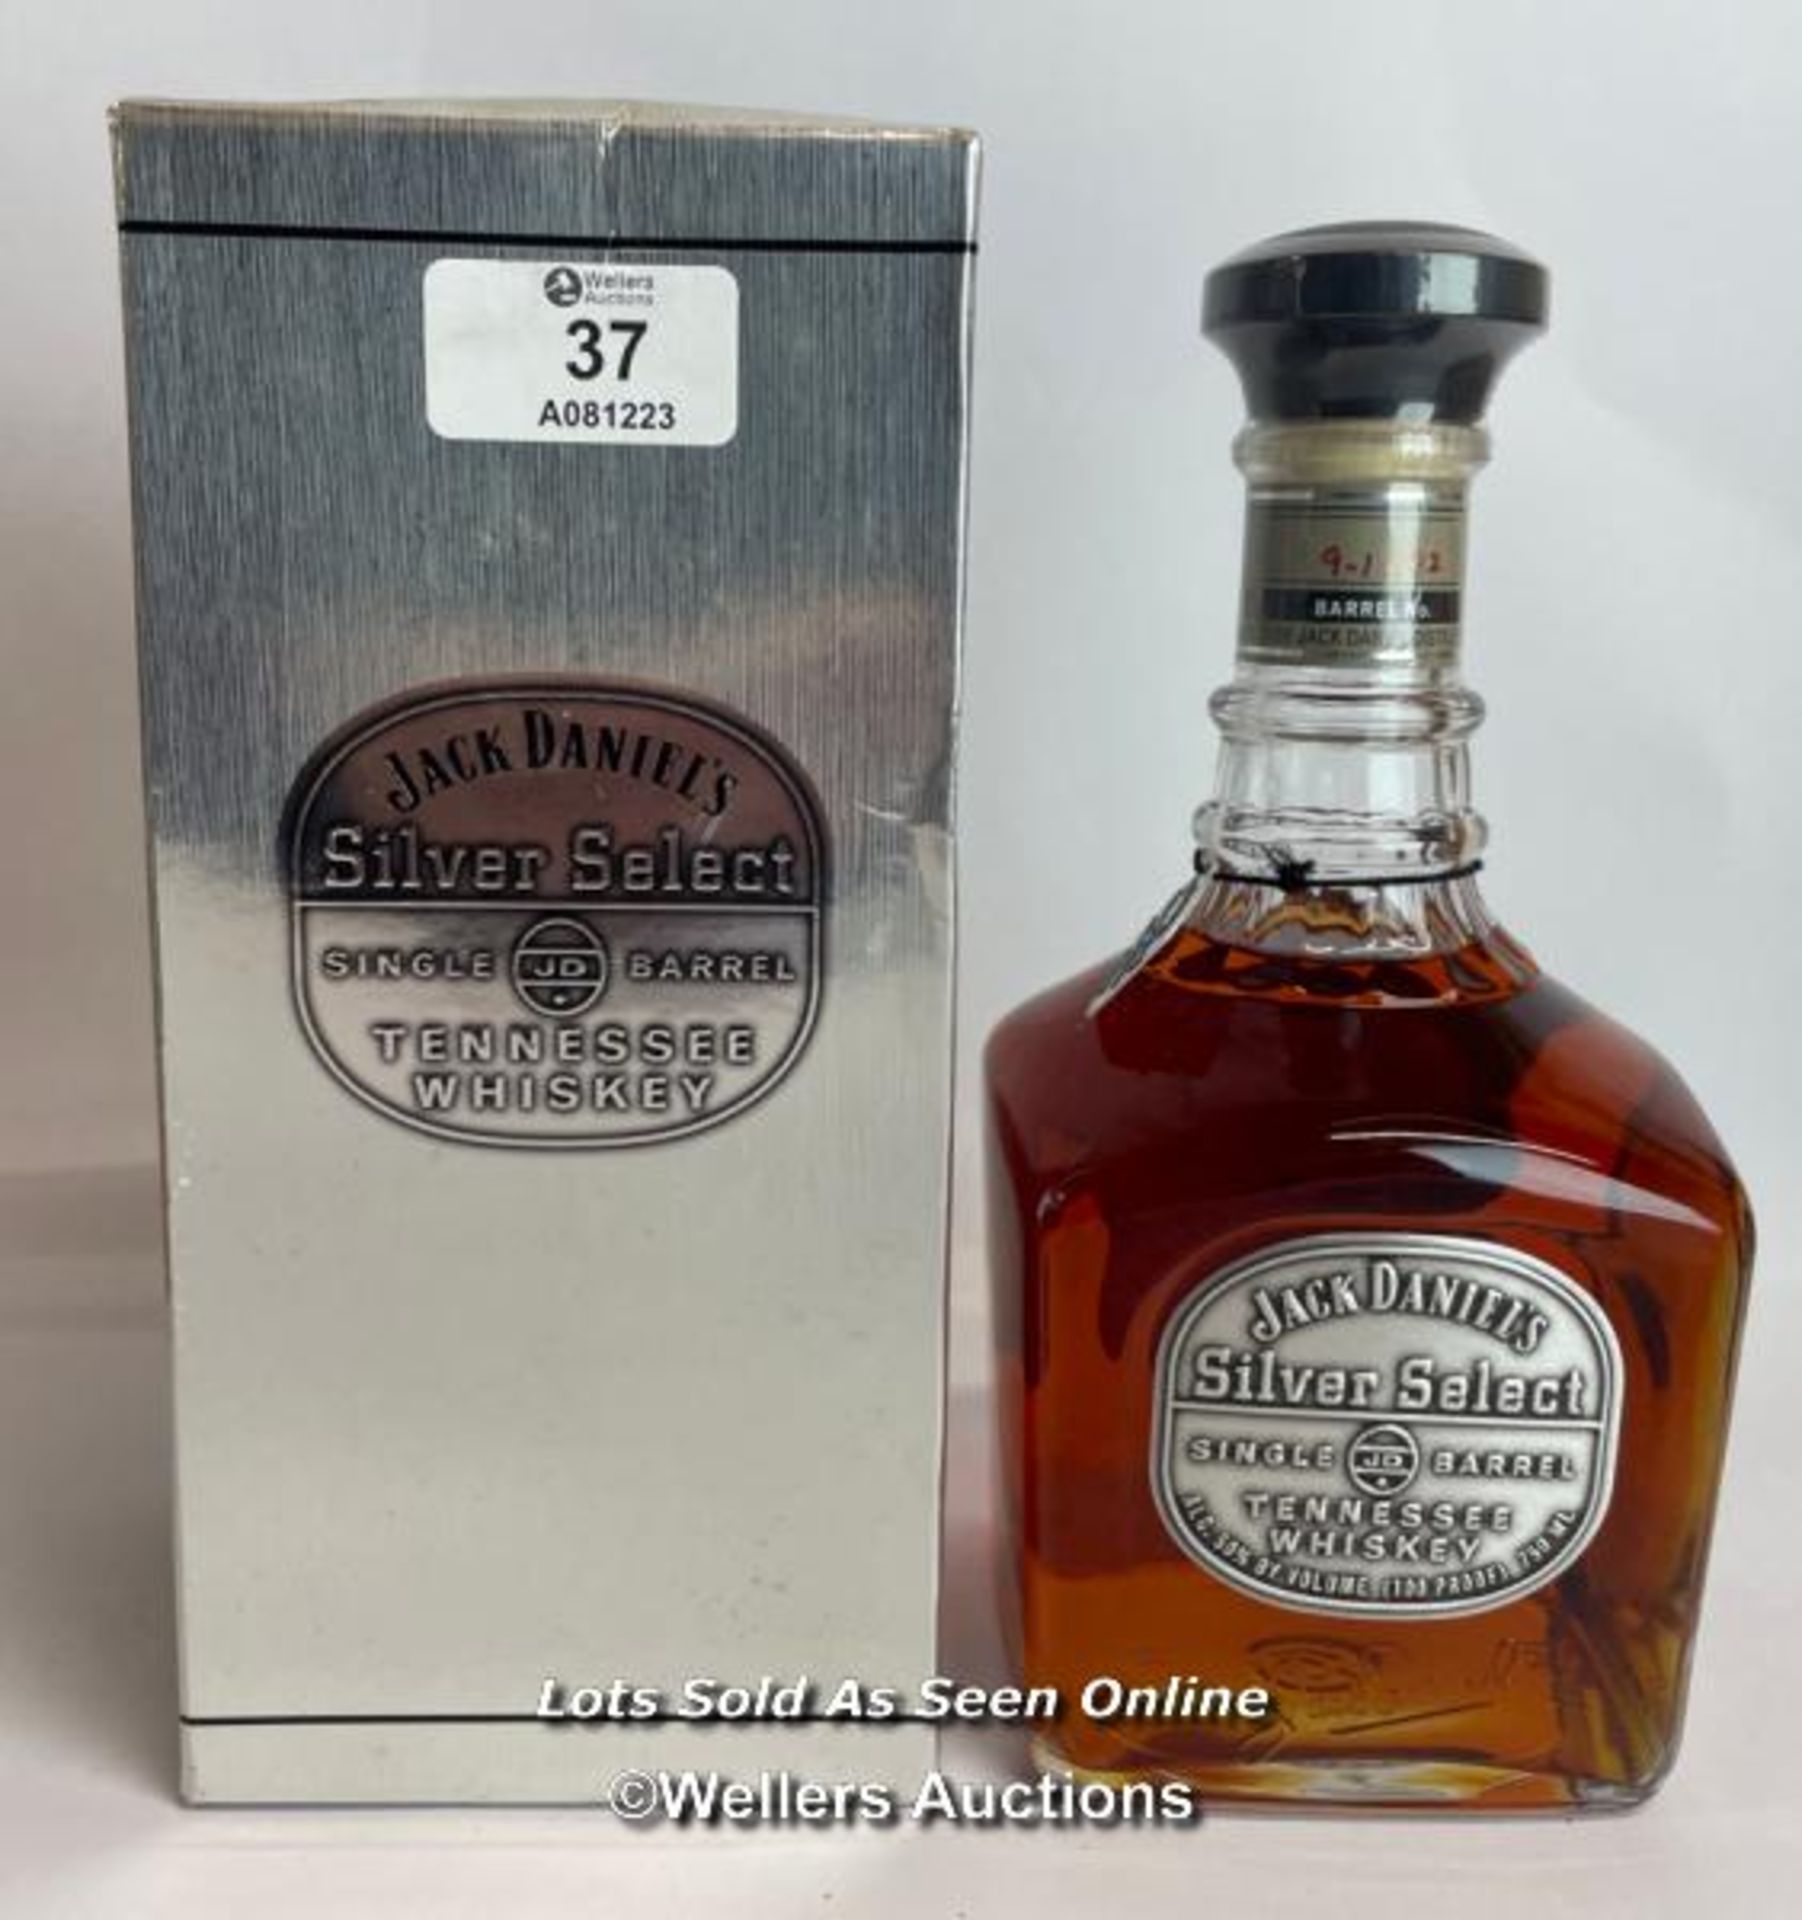 Jack Daniels Silver Select Single Barrel Tennessee Whiskey, Release date: 11-03-99, Barrek no: 9-